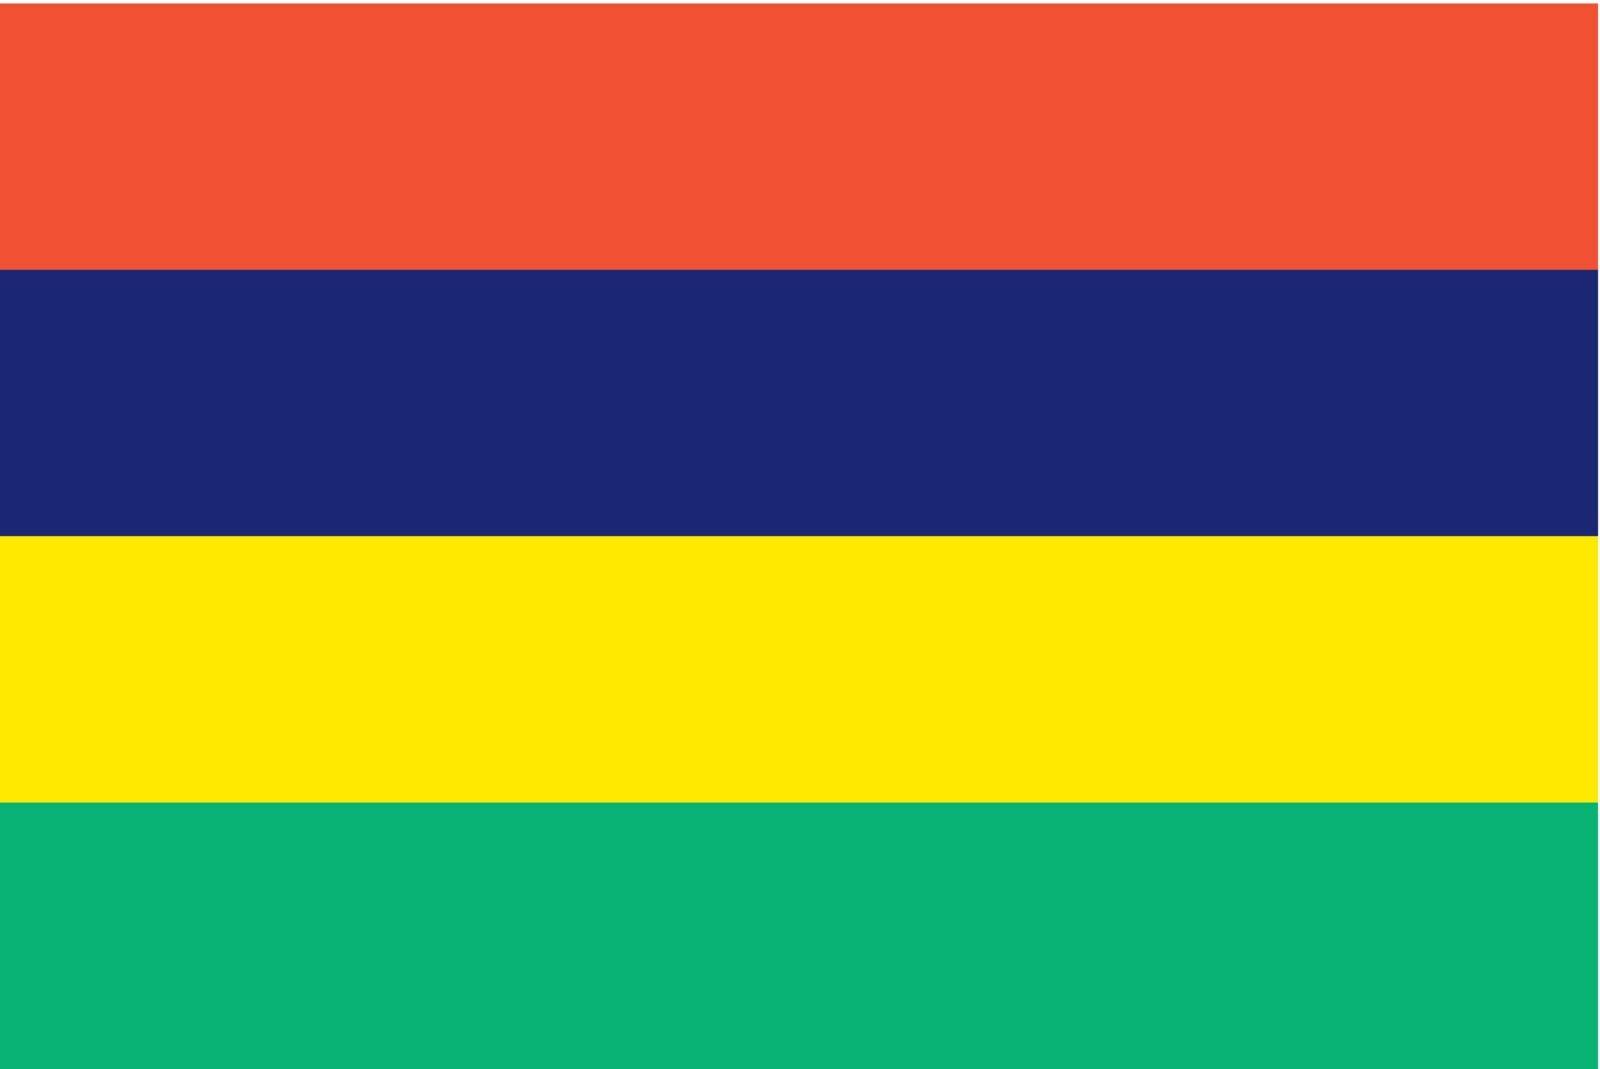 Vector Republic of Mauritius flag